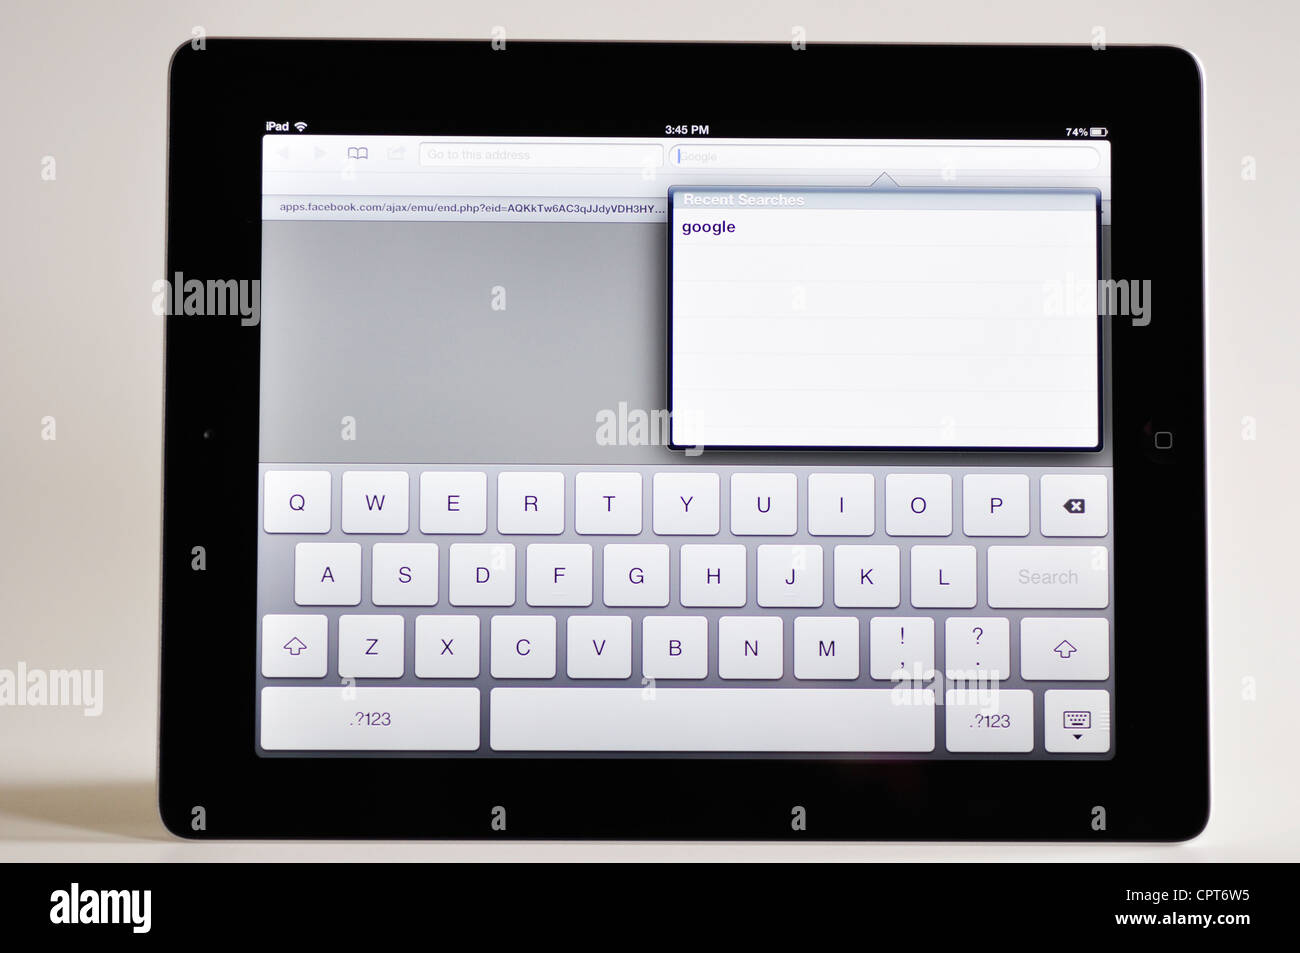 Clavier virtuel de l'iPad Photo Stock - Alamy